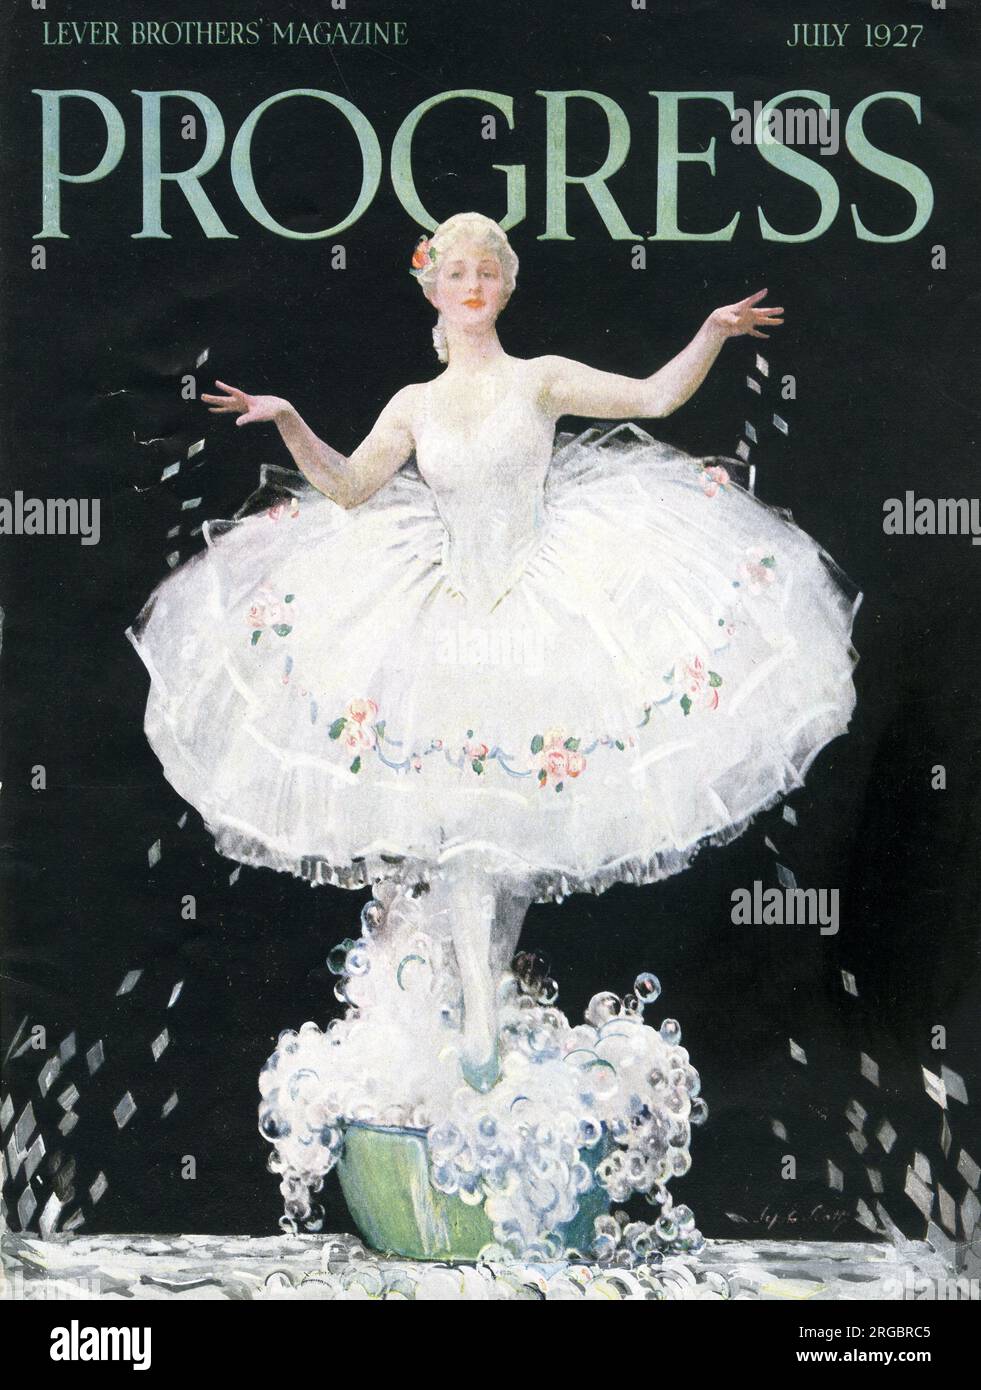 Cover design, Progress, luglio 1927 - rivista Lever Brothers, ballerina in una ciotola di saponette mentre si spargono scaglie di sapone Foto Stock